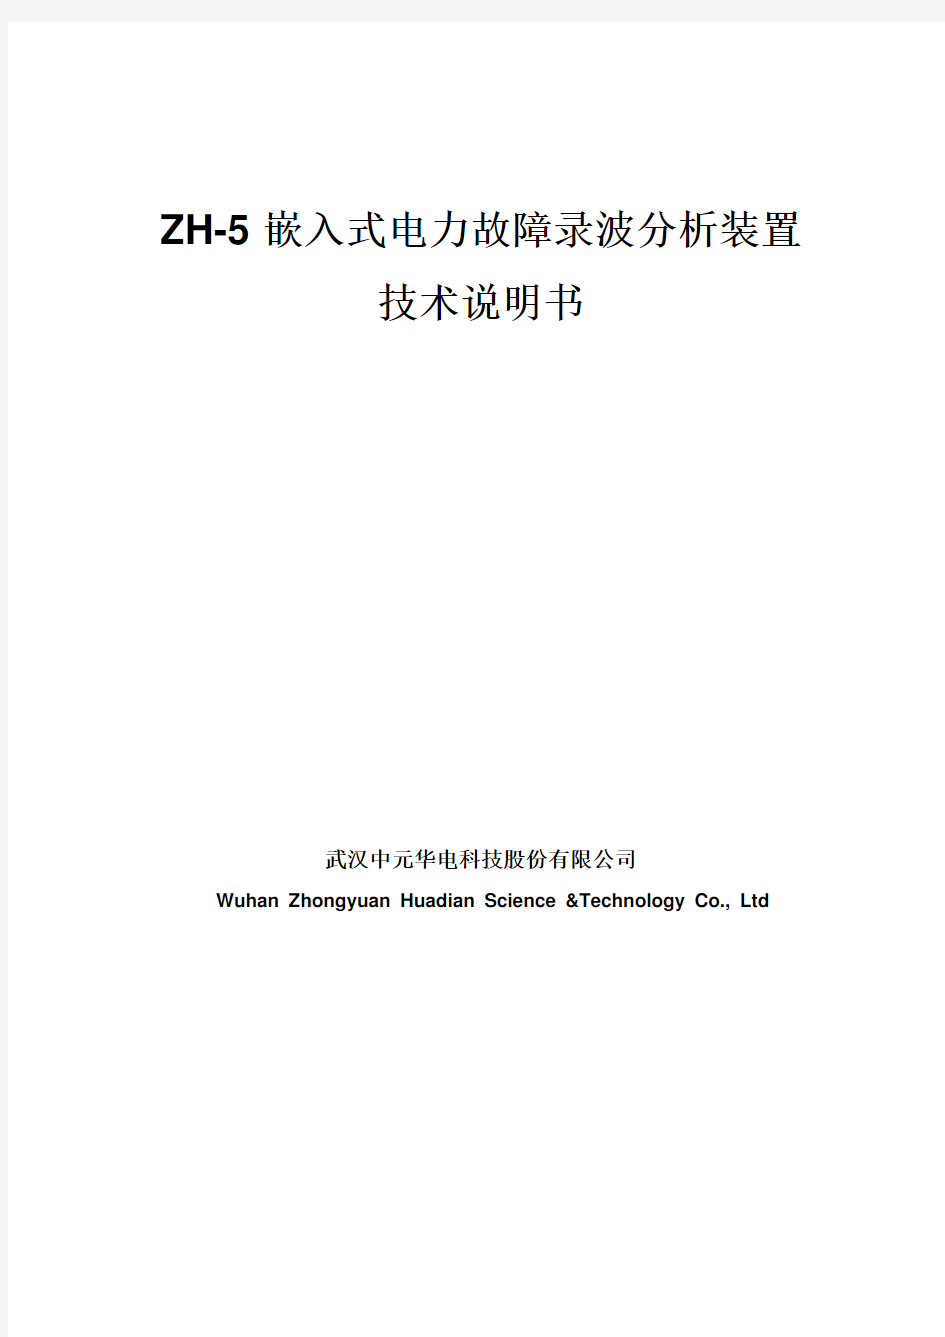 ZH-5嵌入式故障录波器柜 技术说明书